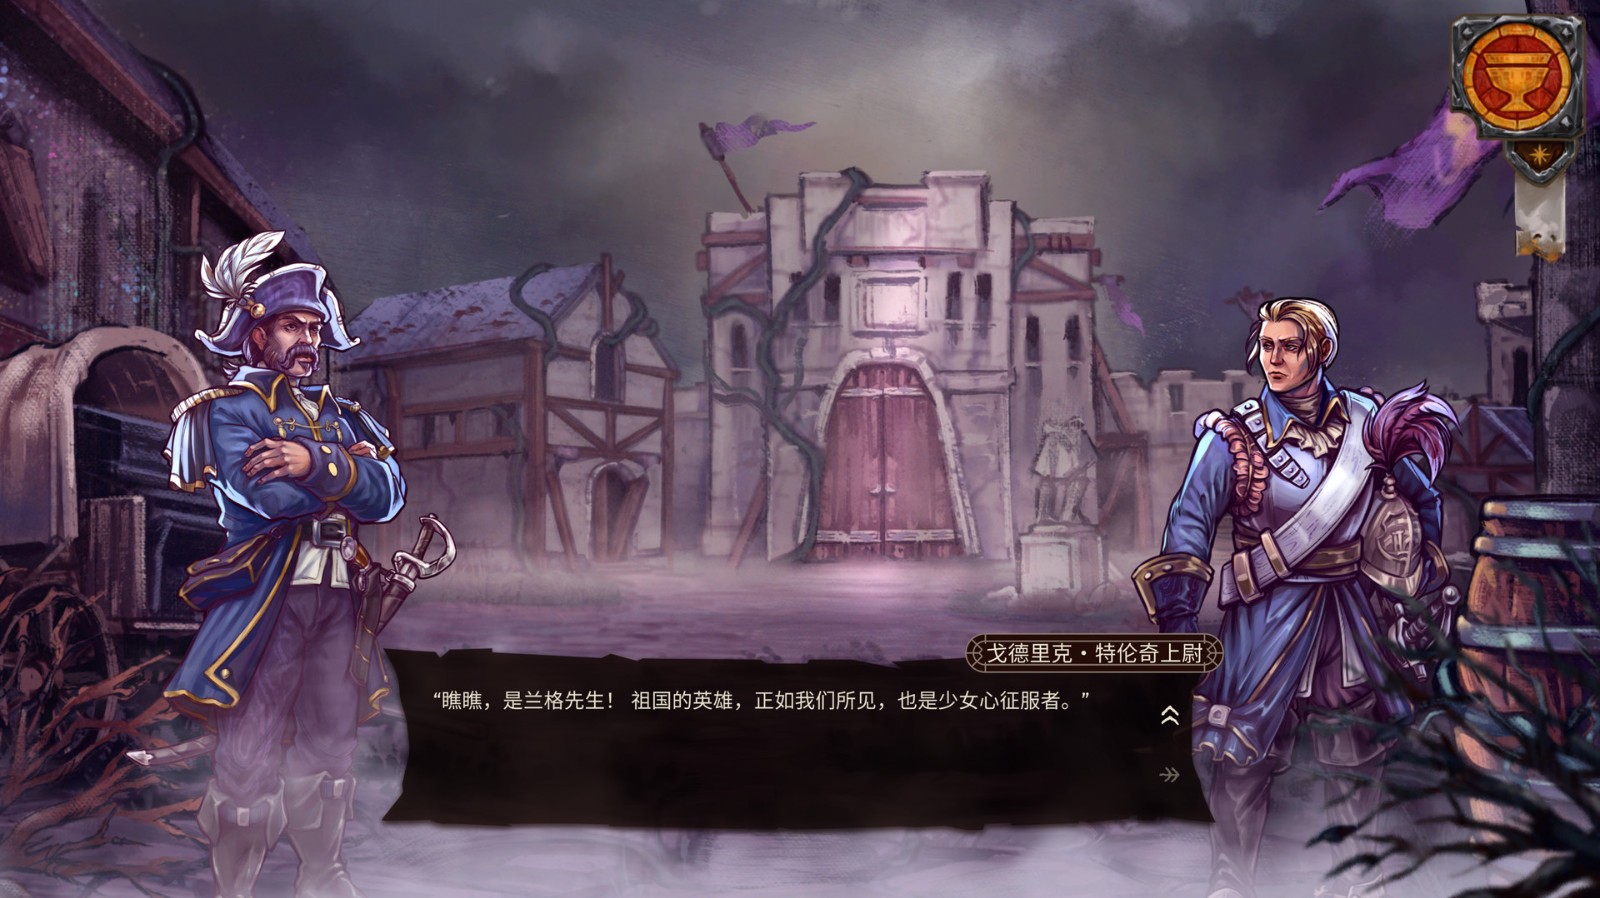 冒险视觉小说《由善意》 将于10月20日在Steam推出